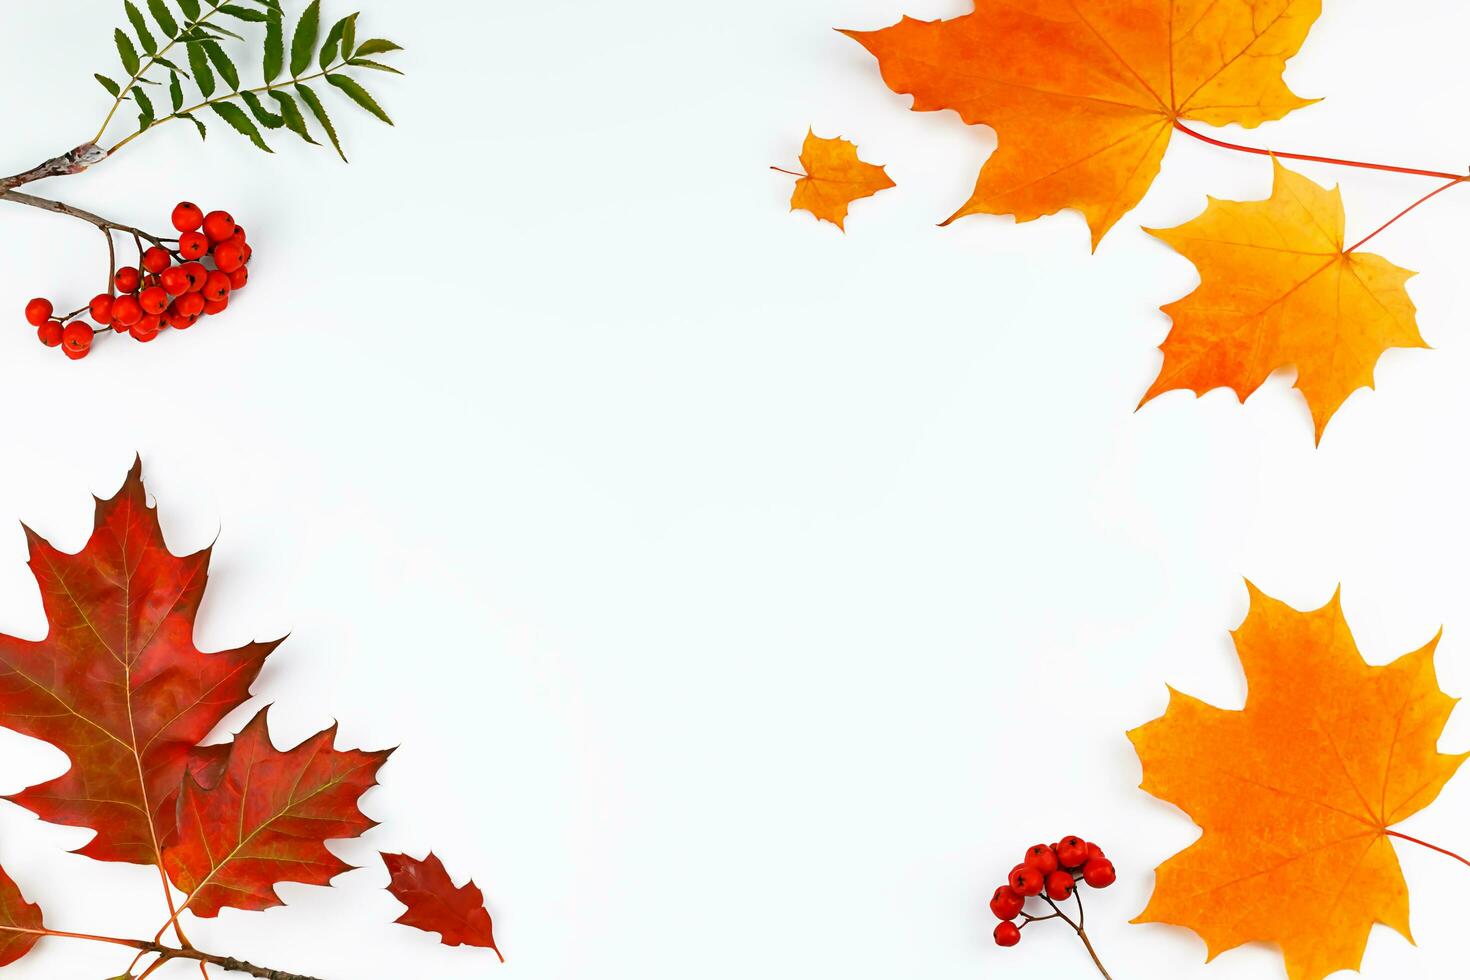 quadro, Armação a partir de outono folhas e Rowan bagas em uma branco fundo. foto